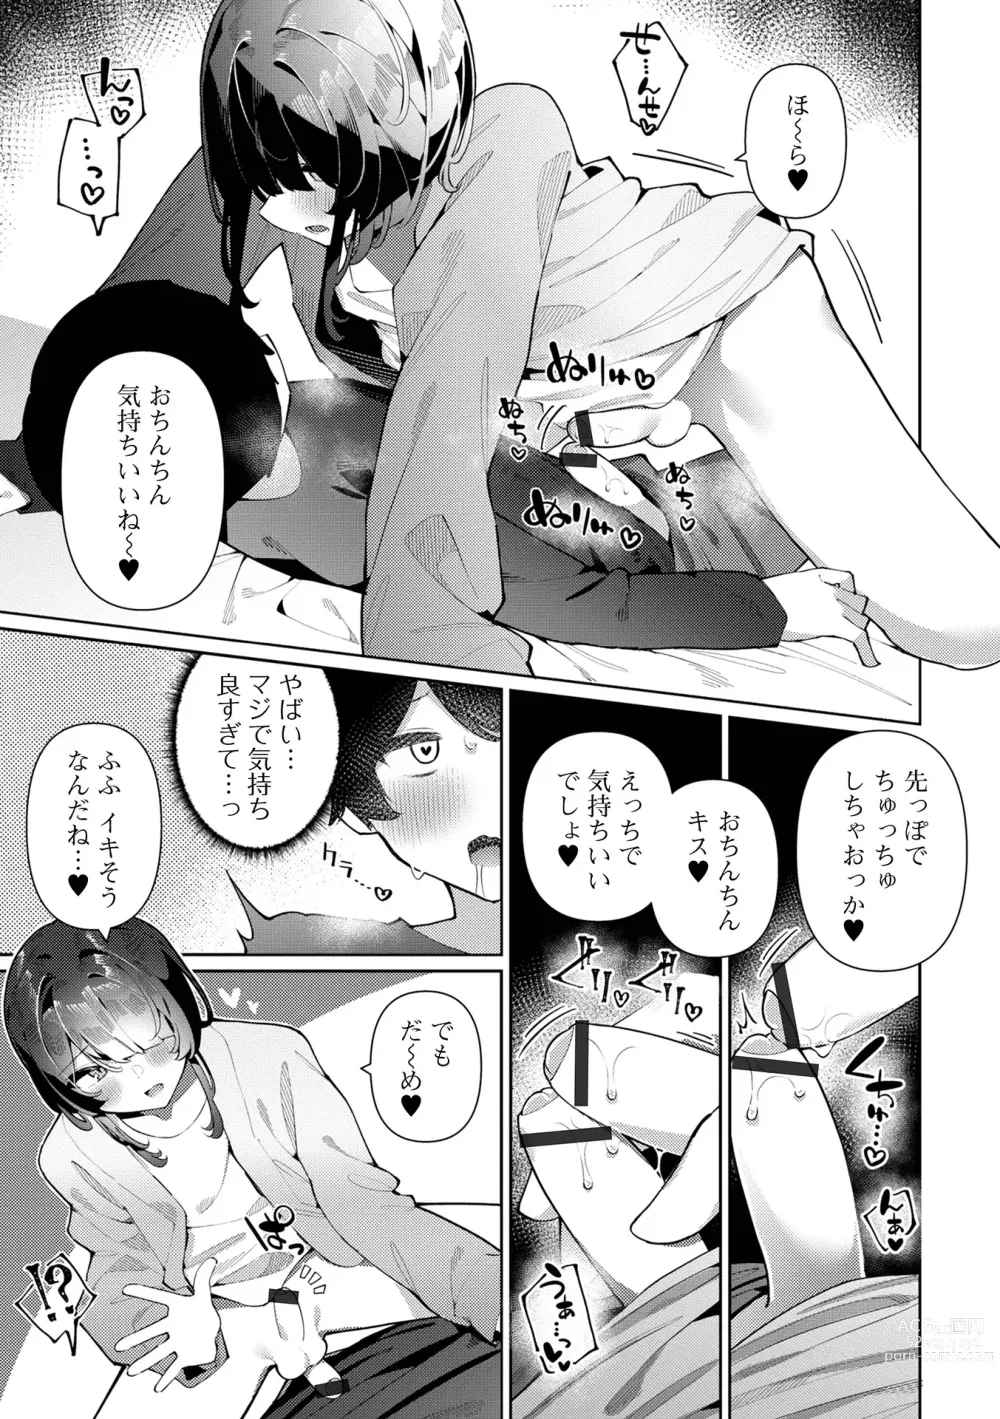 Page 9 of manga Gekkan Web Otoko no Ko-llection! S Vol. 90